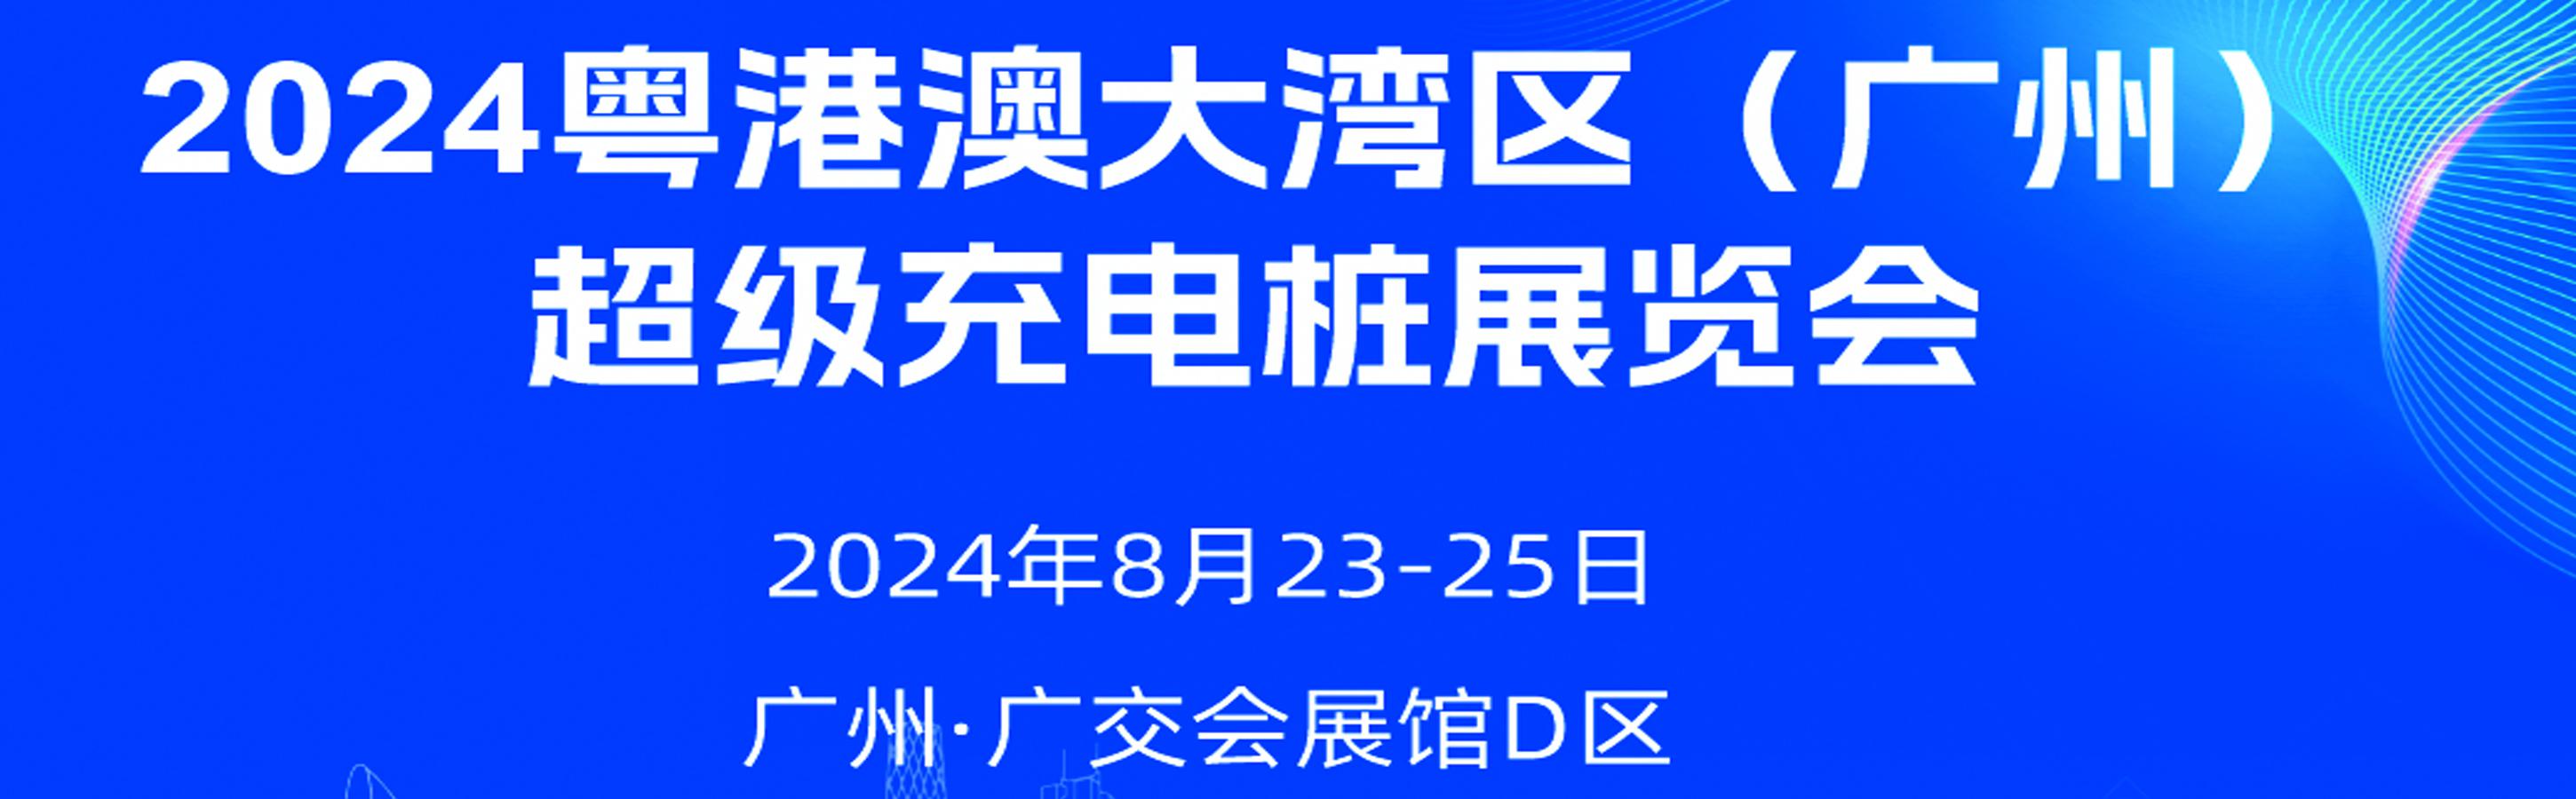 2024粤港澳大湾区（广州）超级充电桩展览会